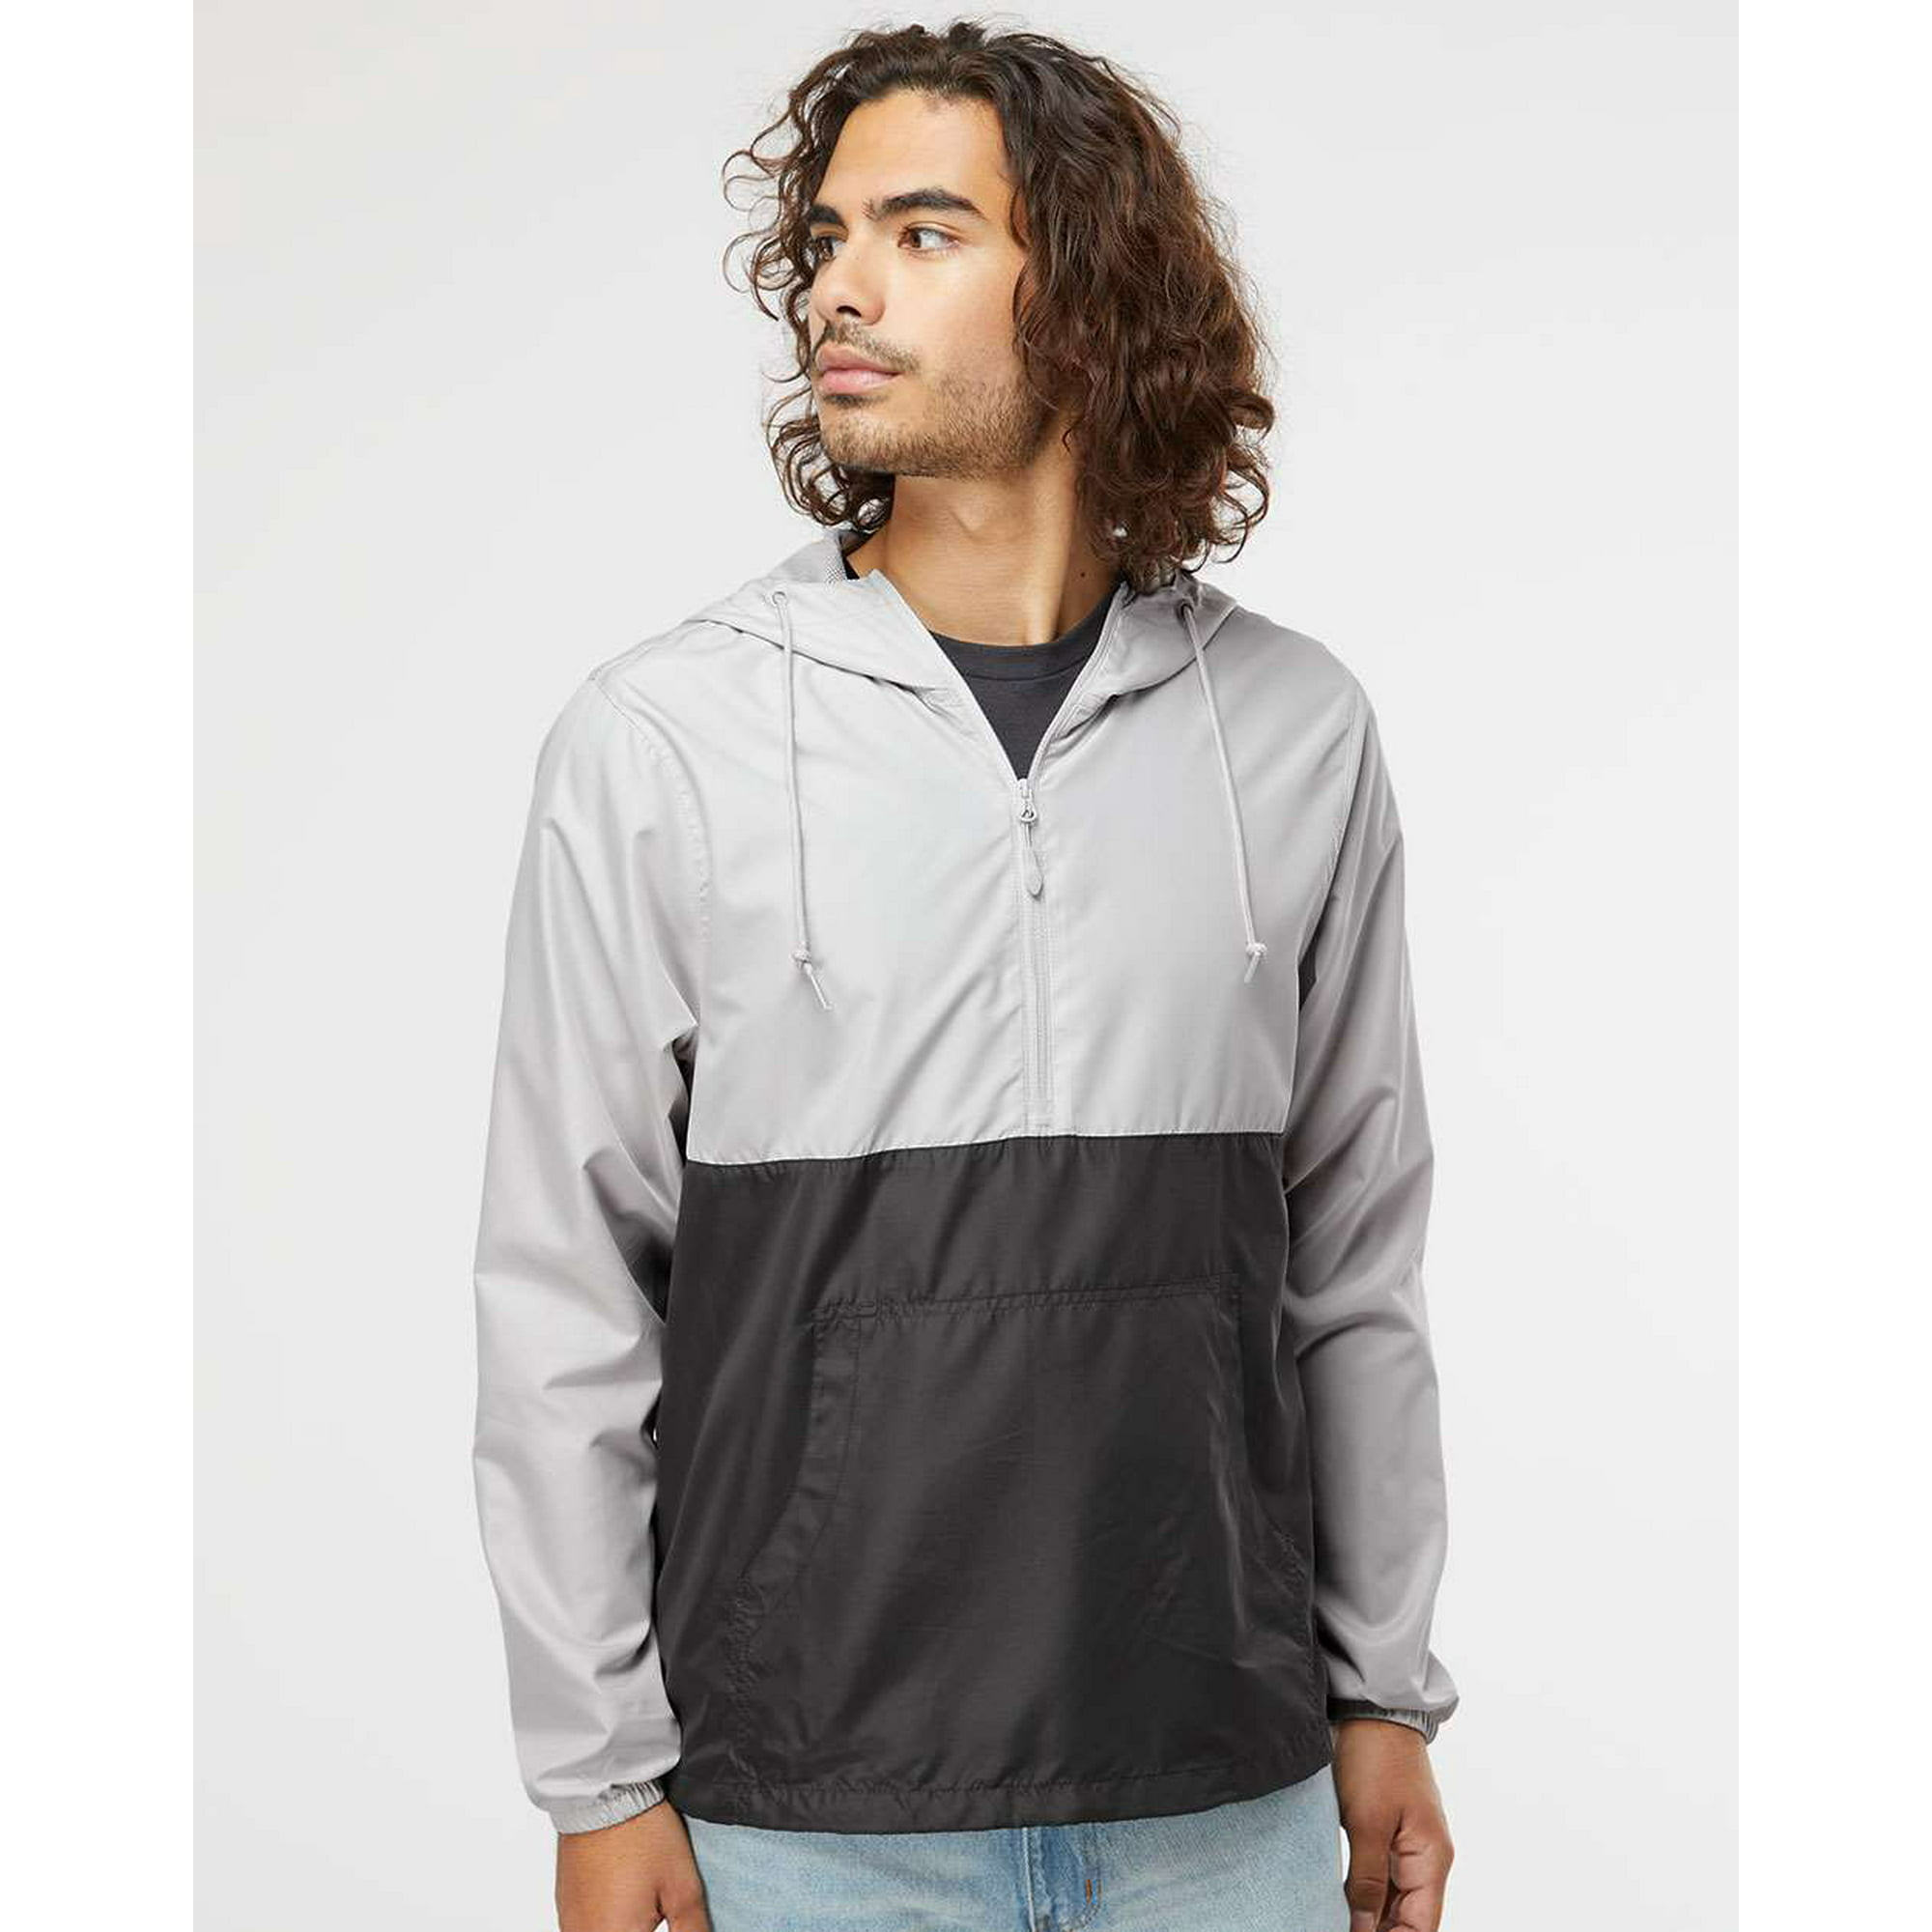 Men's Quarter-Zip Windbreaker Pullover Jacket